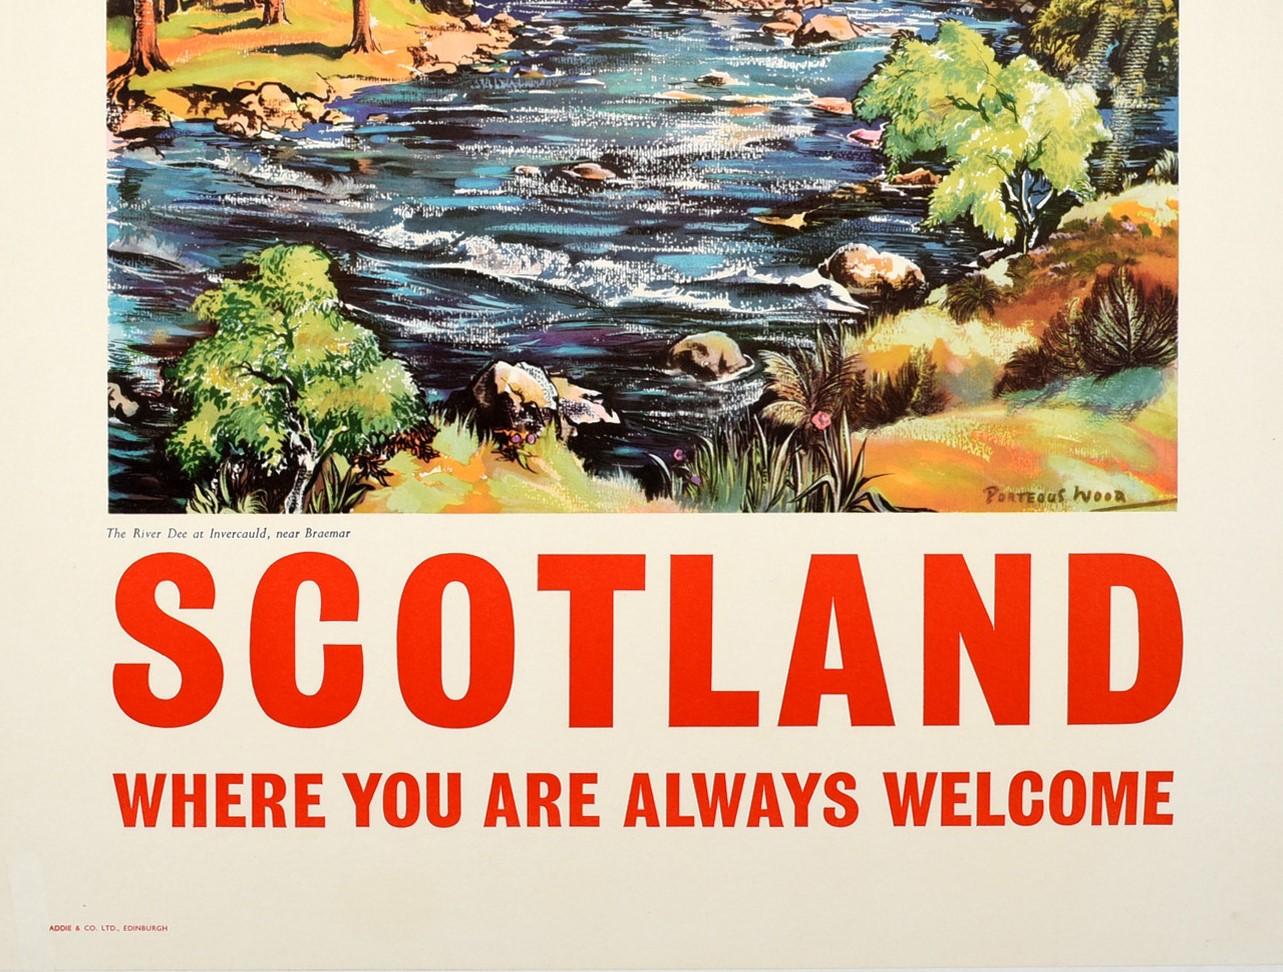 British Original Vintage Scotland Travel Poster Old Bridge River Dee Scottish Highlands